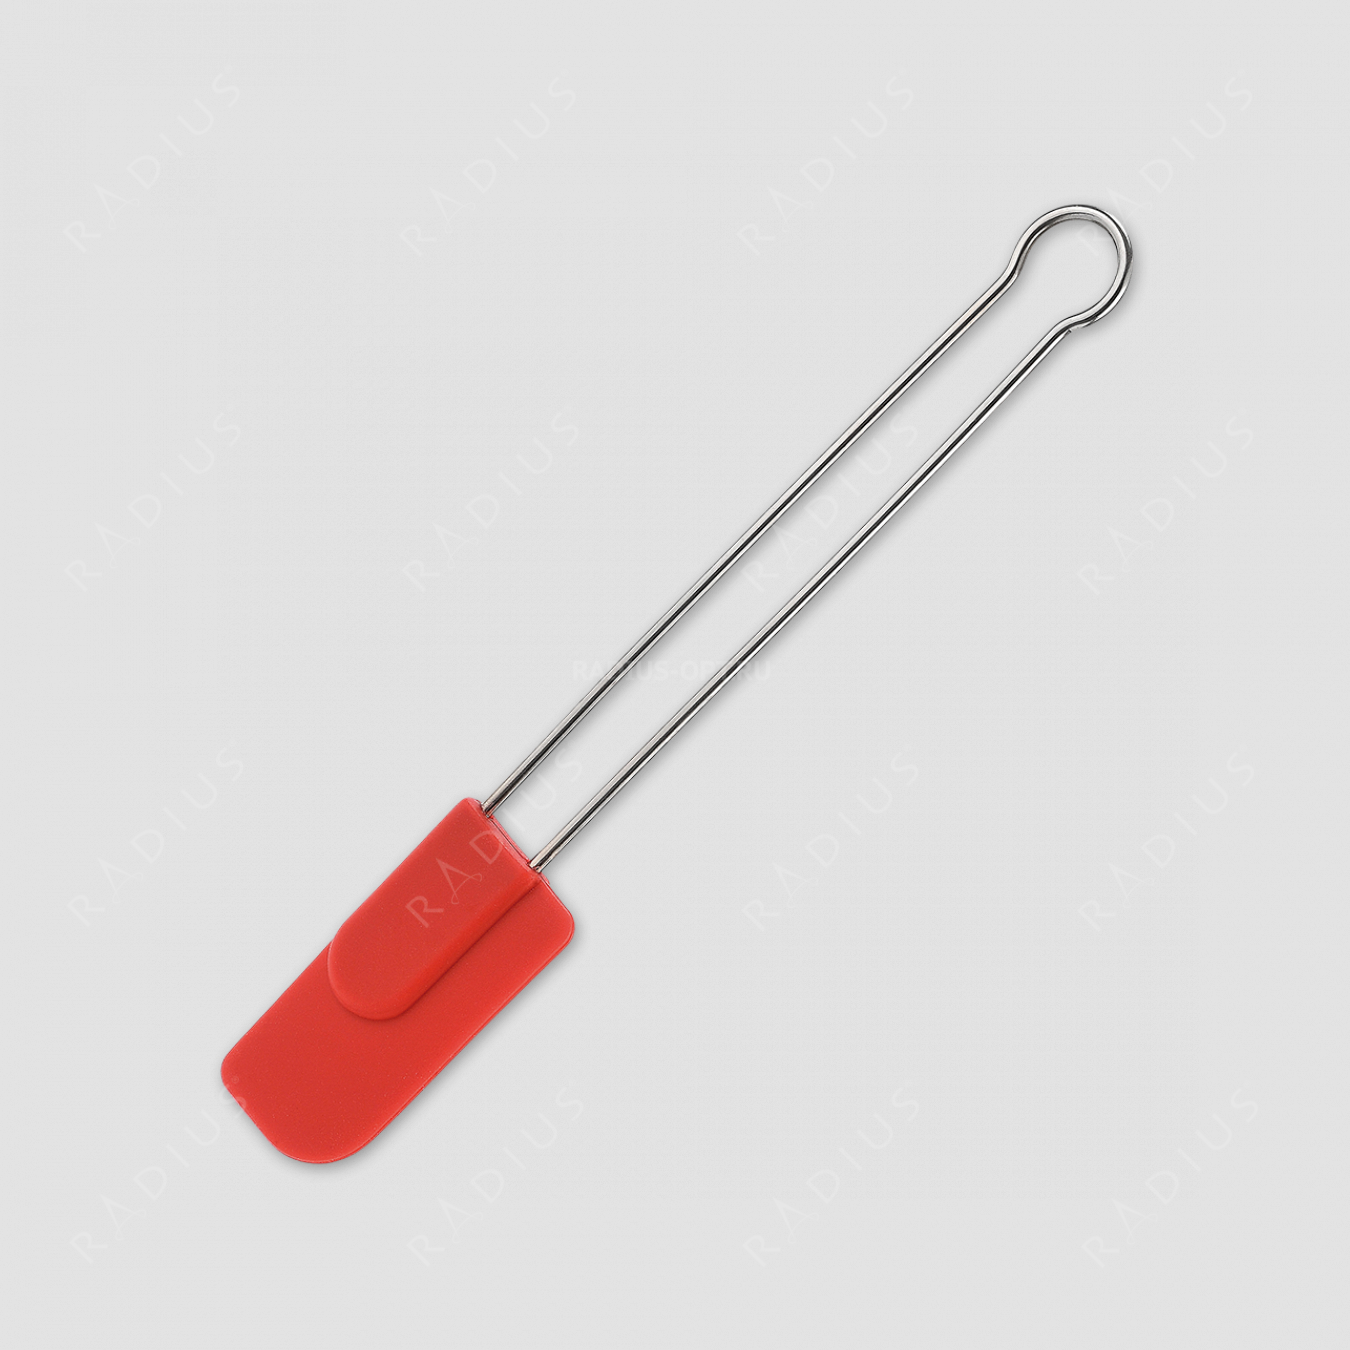 Кондитерский шпатель силиконовый 22 см, ручка нерж. сталь, красная, серия Techno, Westmark, Германия